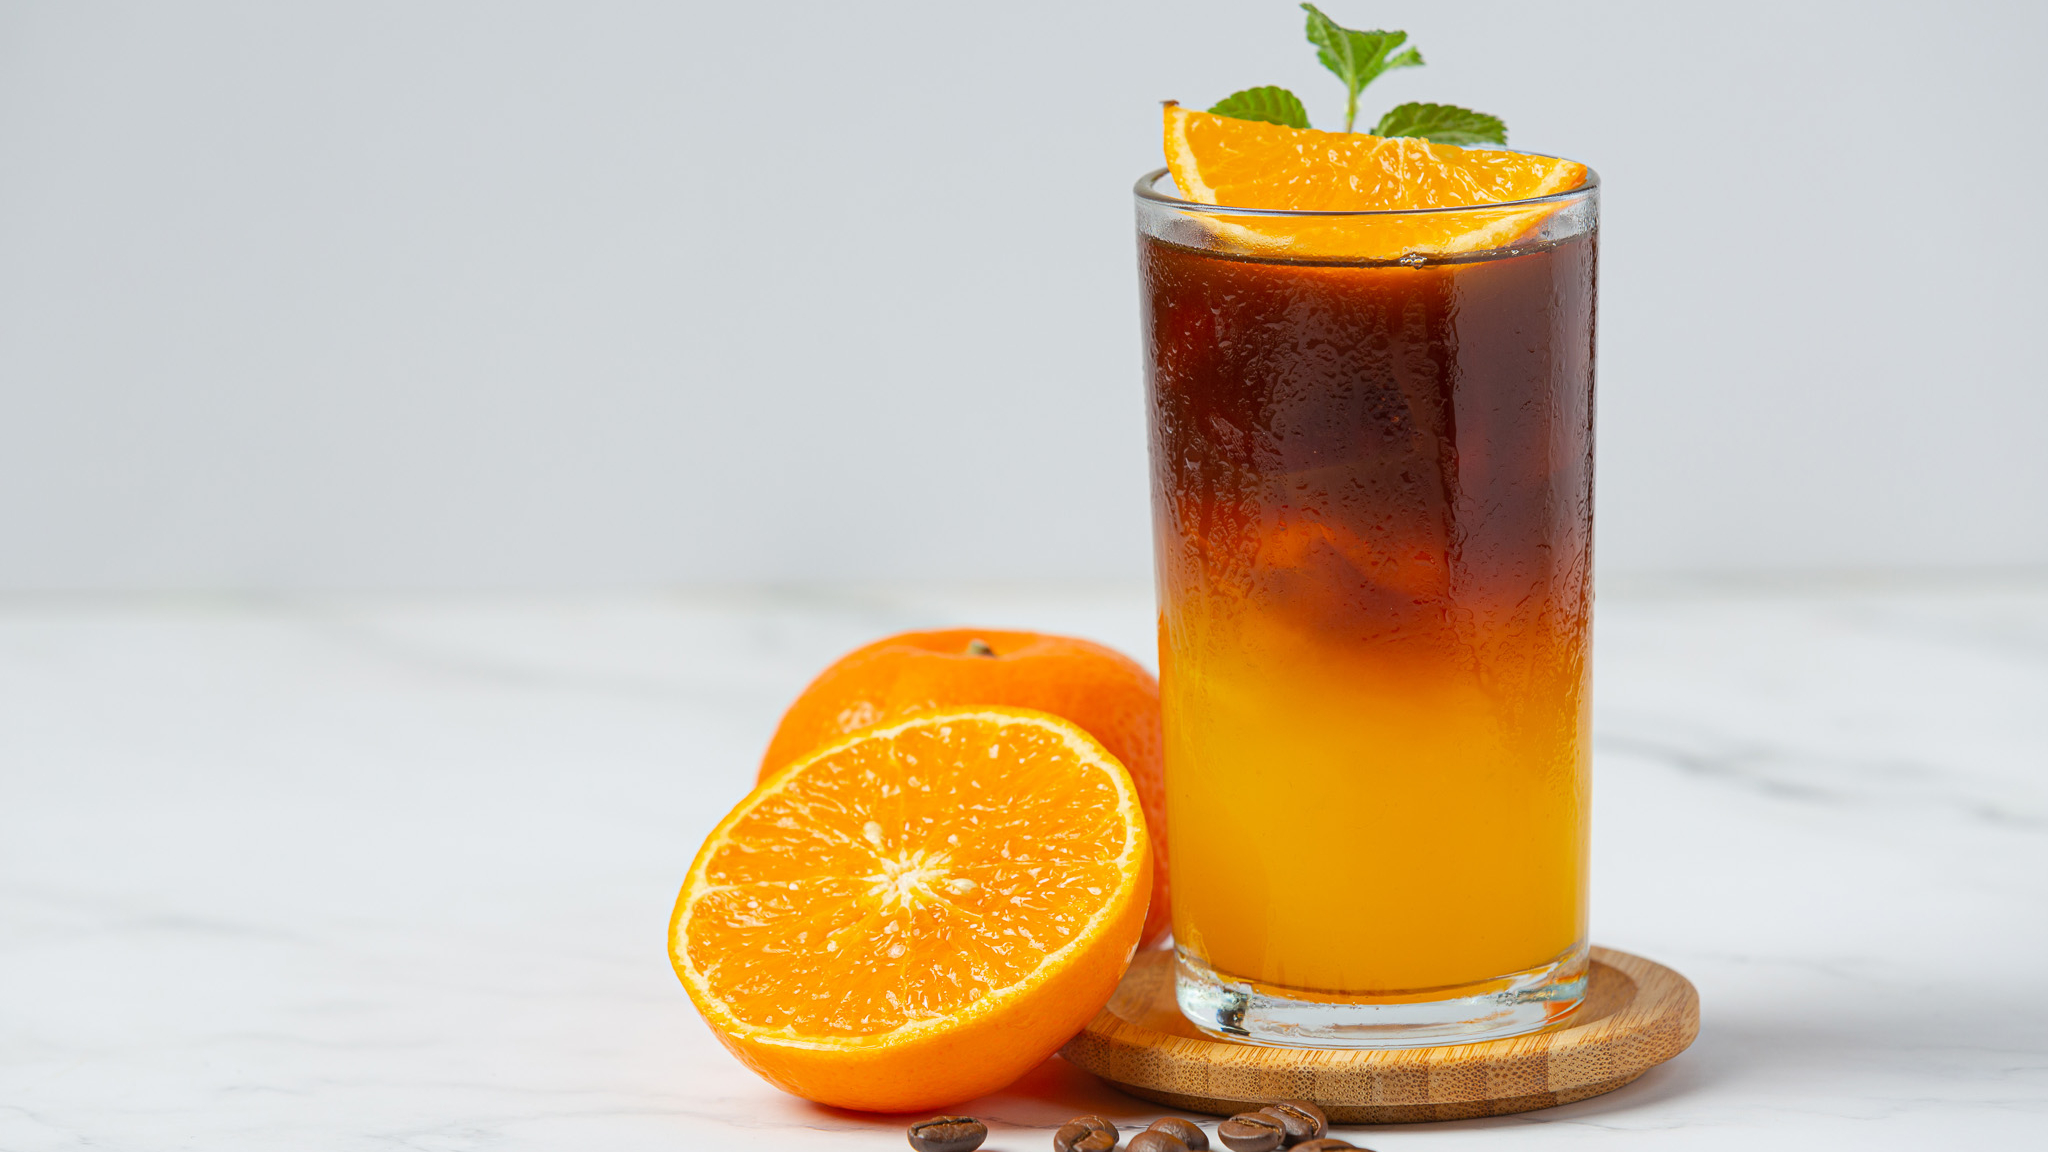 cocktail café orange dans un verre transparent avec une orange coupée en deux